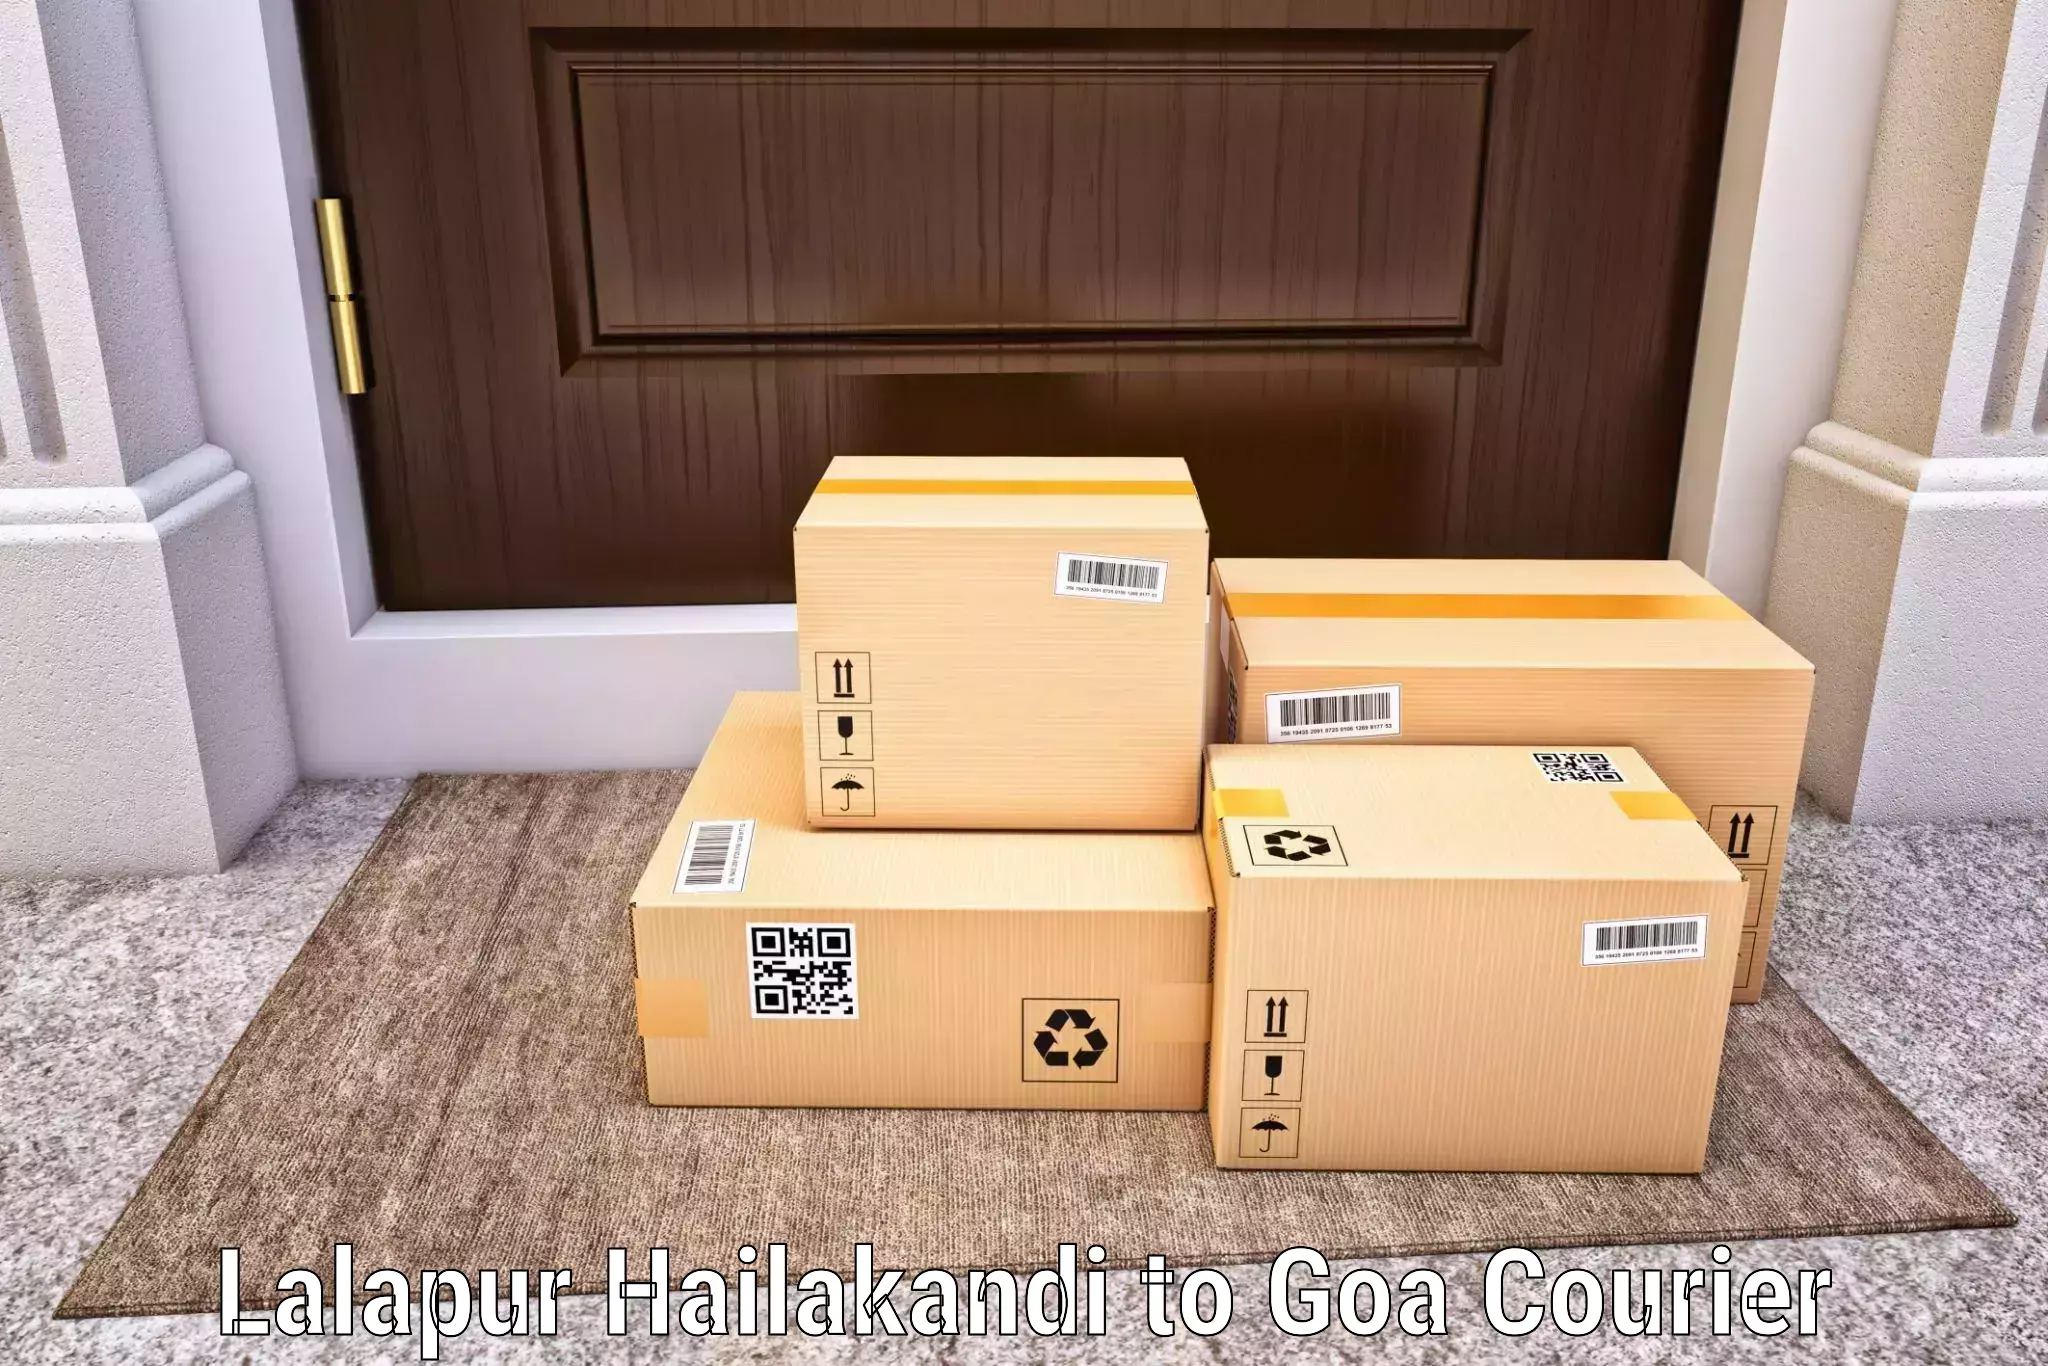 Ocean freight courier Lalapur Hailakandi to NIT Goa